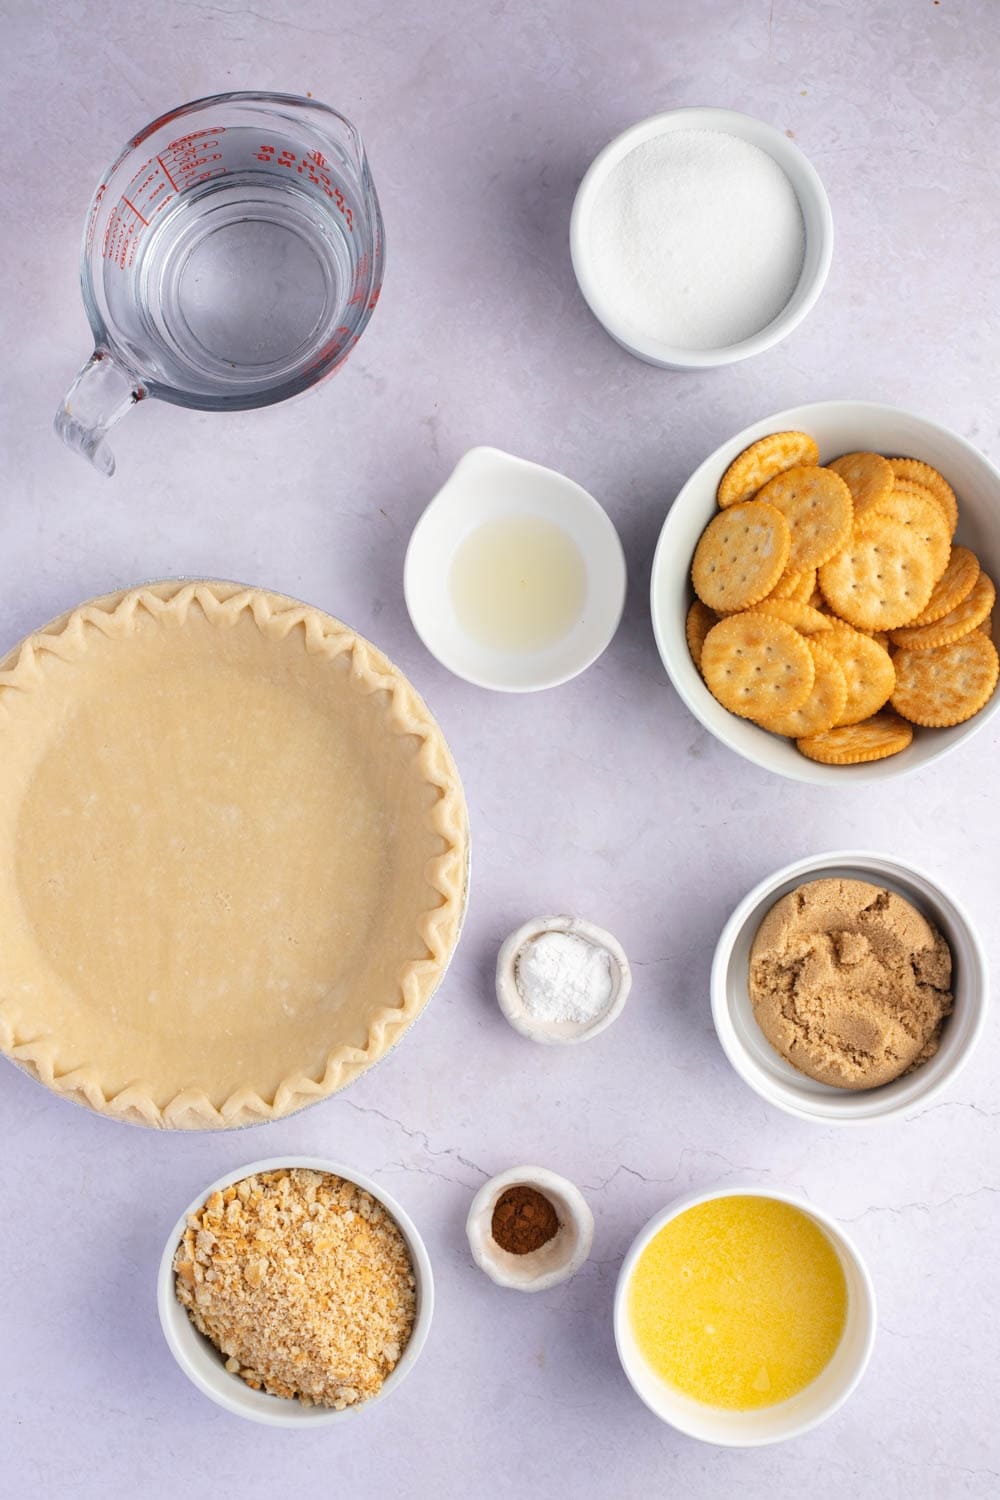 Mock Apple Pie Ingredients - Sugar, Round Crackers, Lemon Juice. Cinnamon and Butter